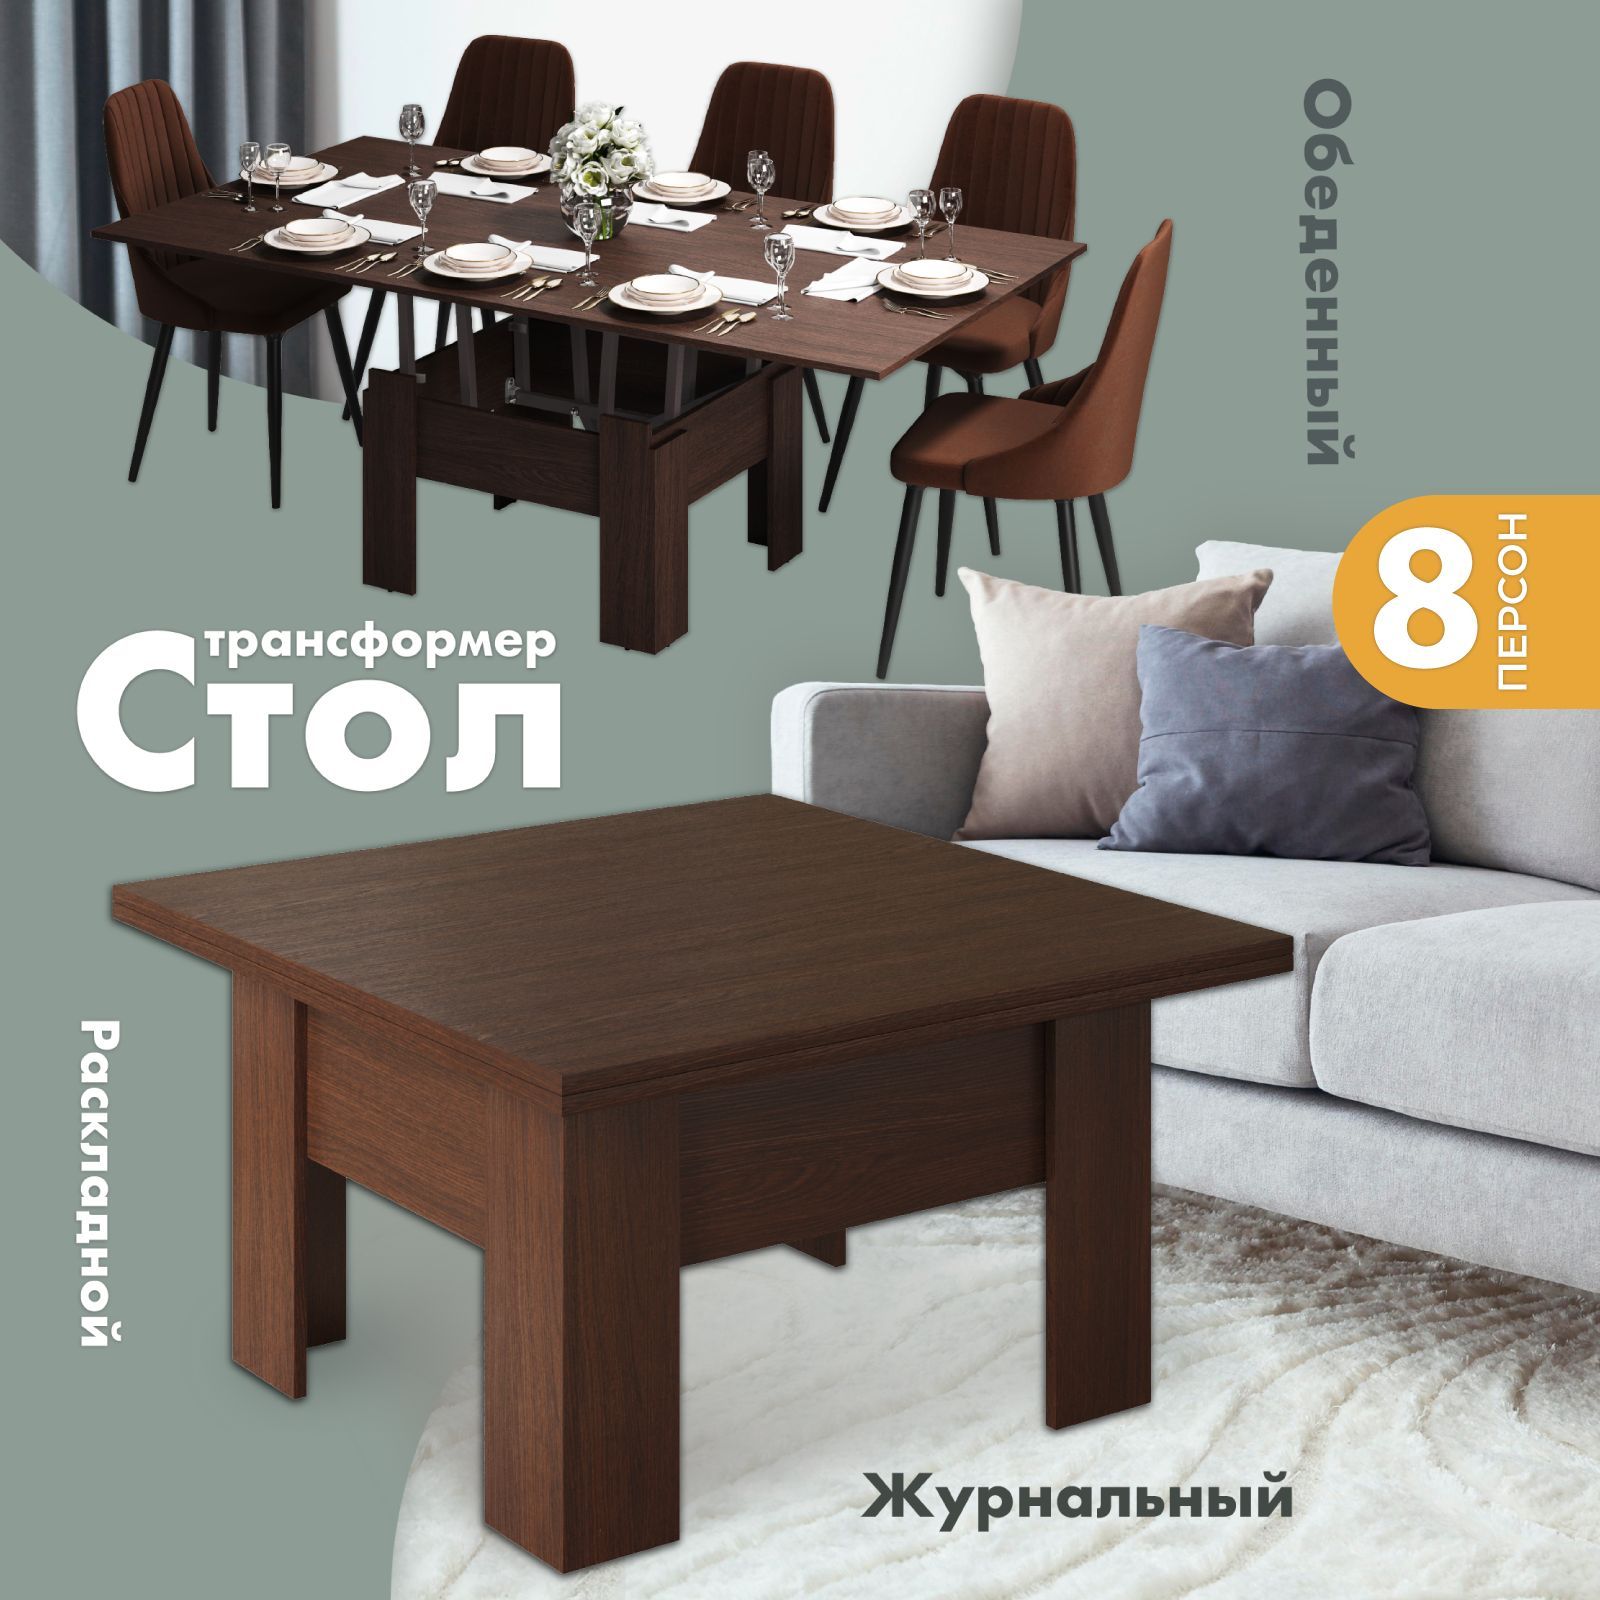 Недорогие столики и столы трансформеры в Минске: цены, фото, доставка